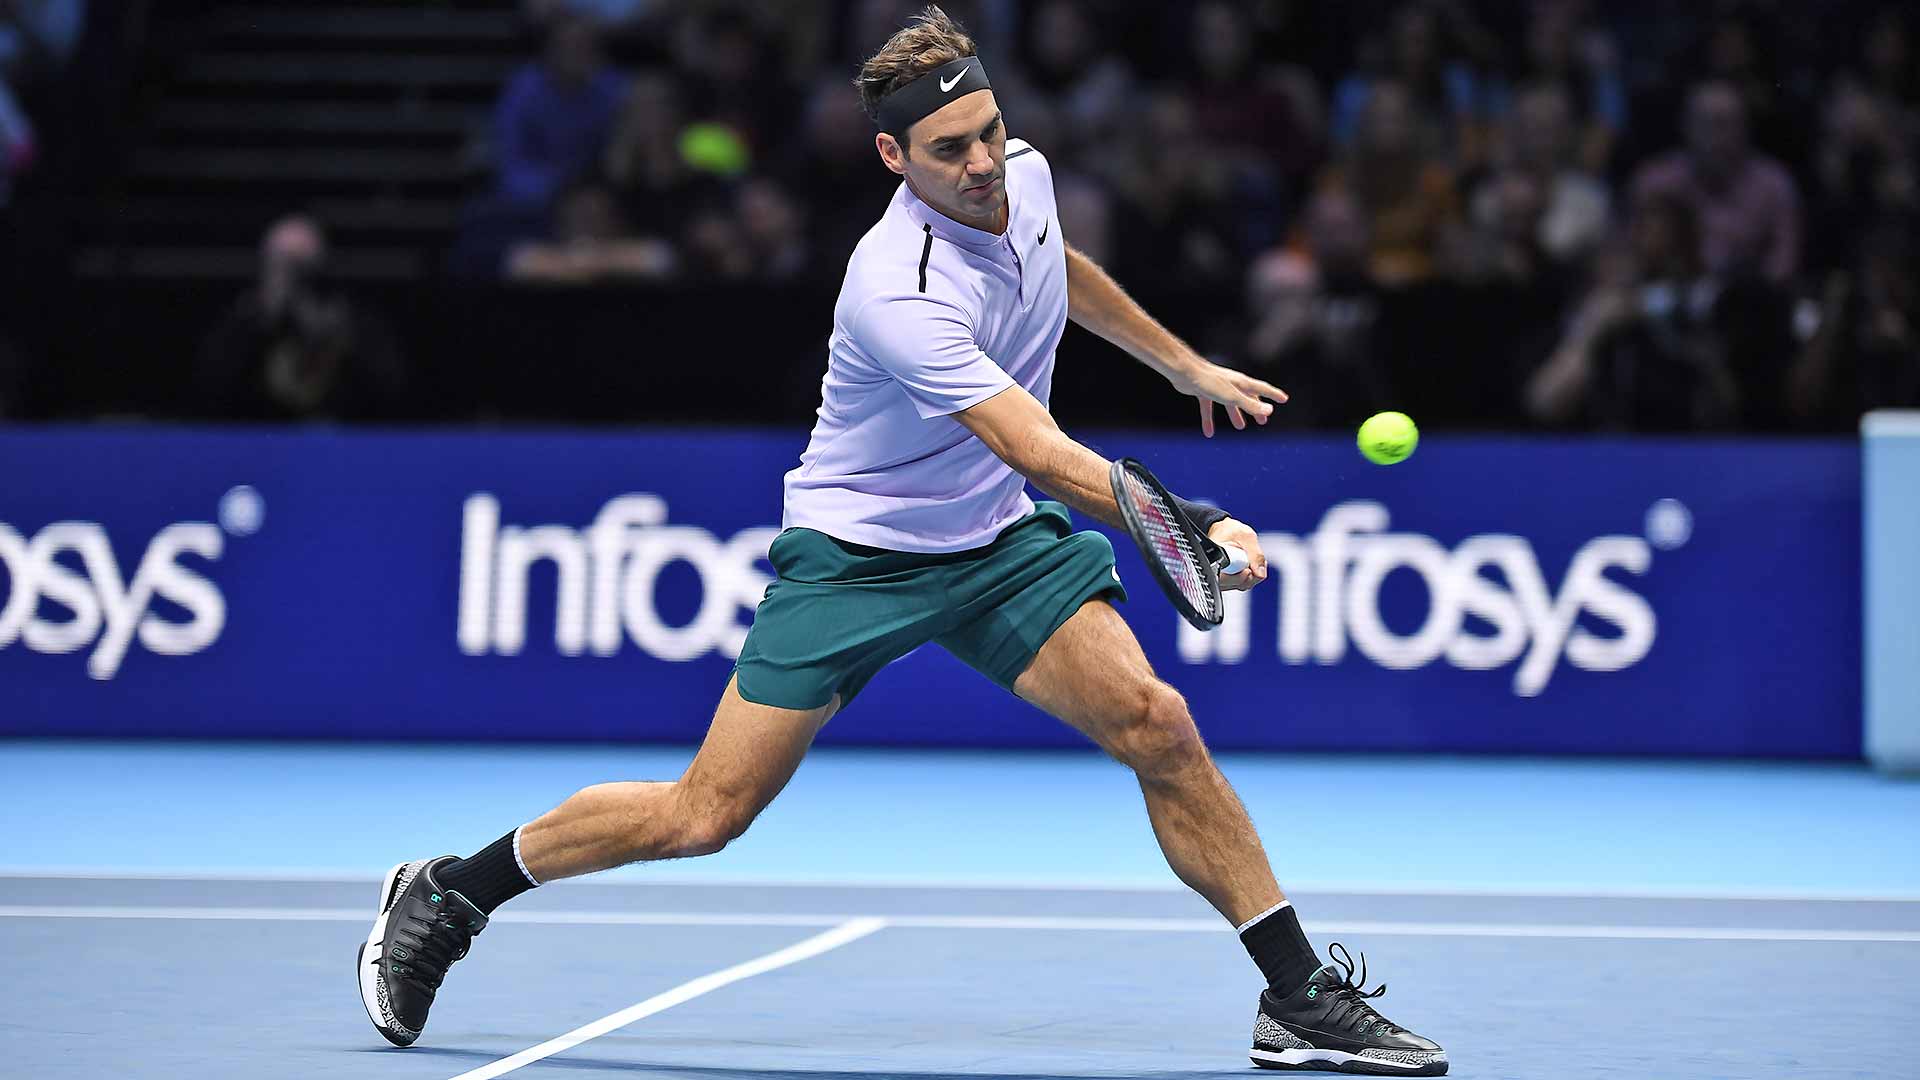 Roger Federer 2017 Nitto ATP Finals